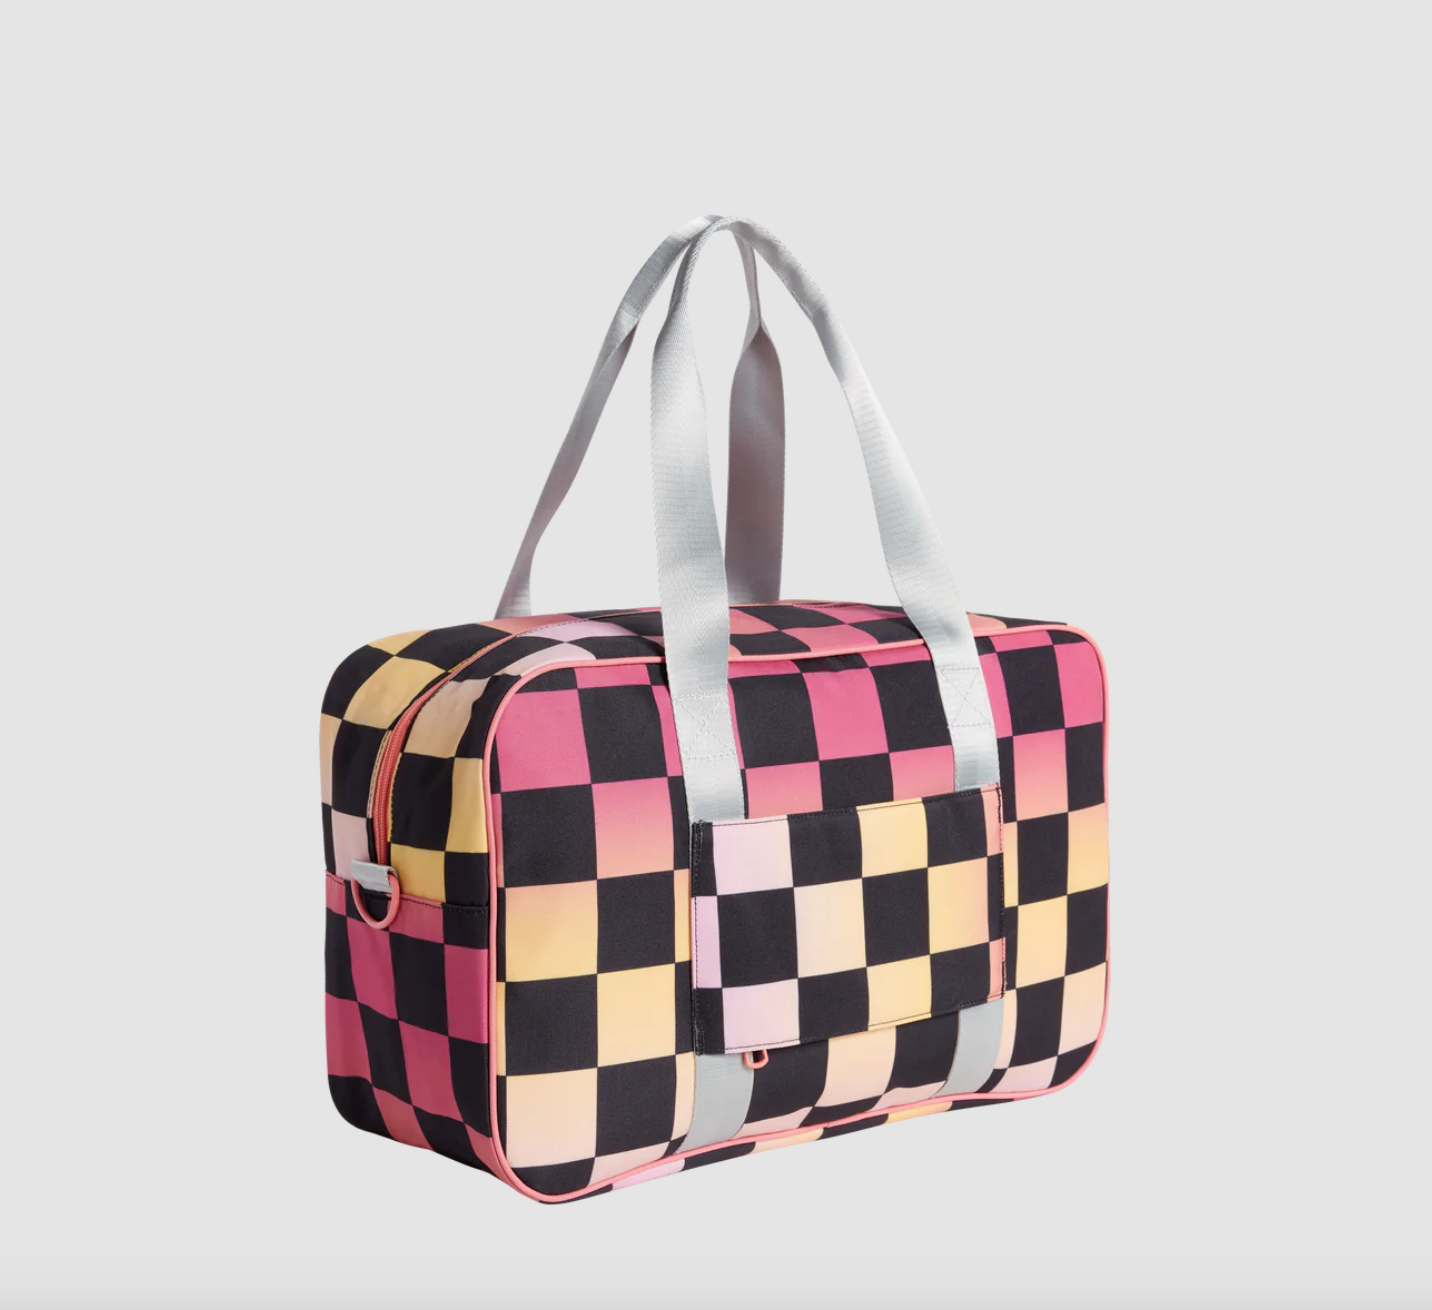 State Bags Rockaway Kids Duffle - Pink Checkerboard